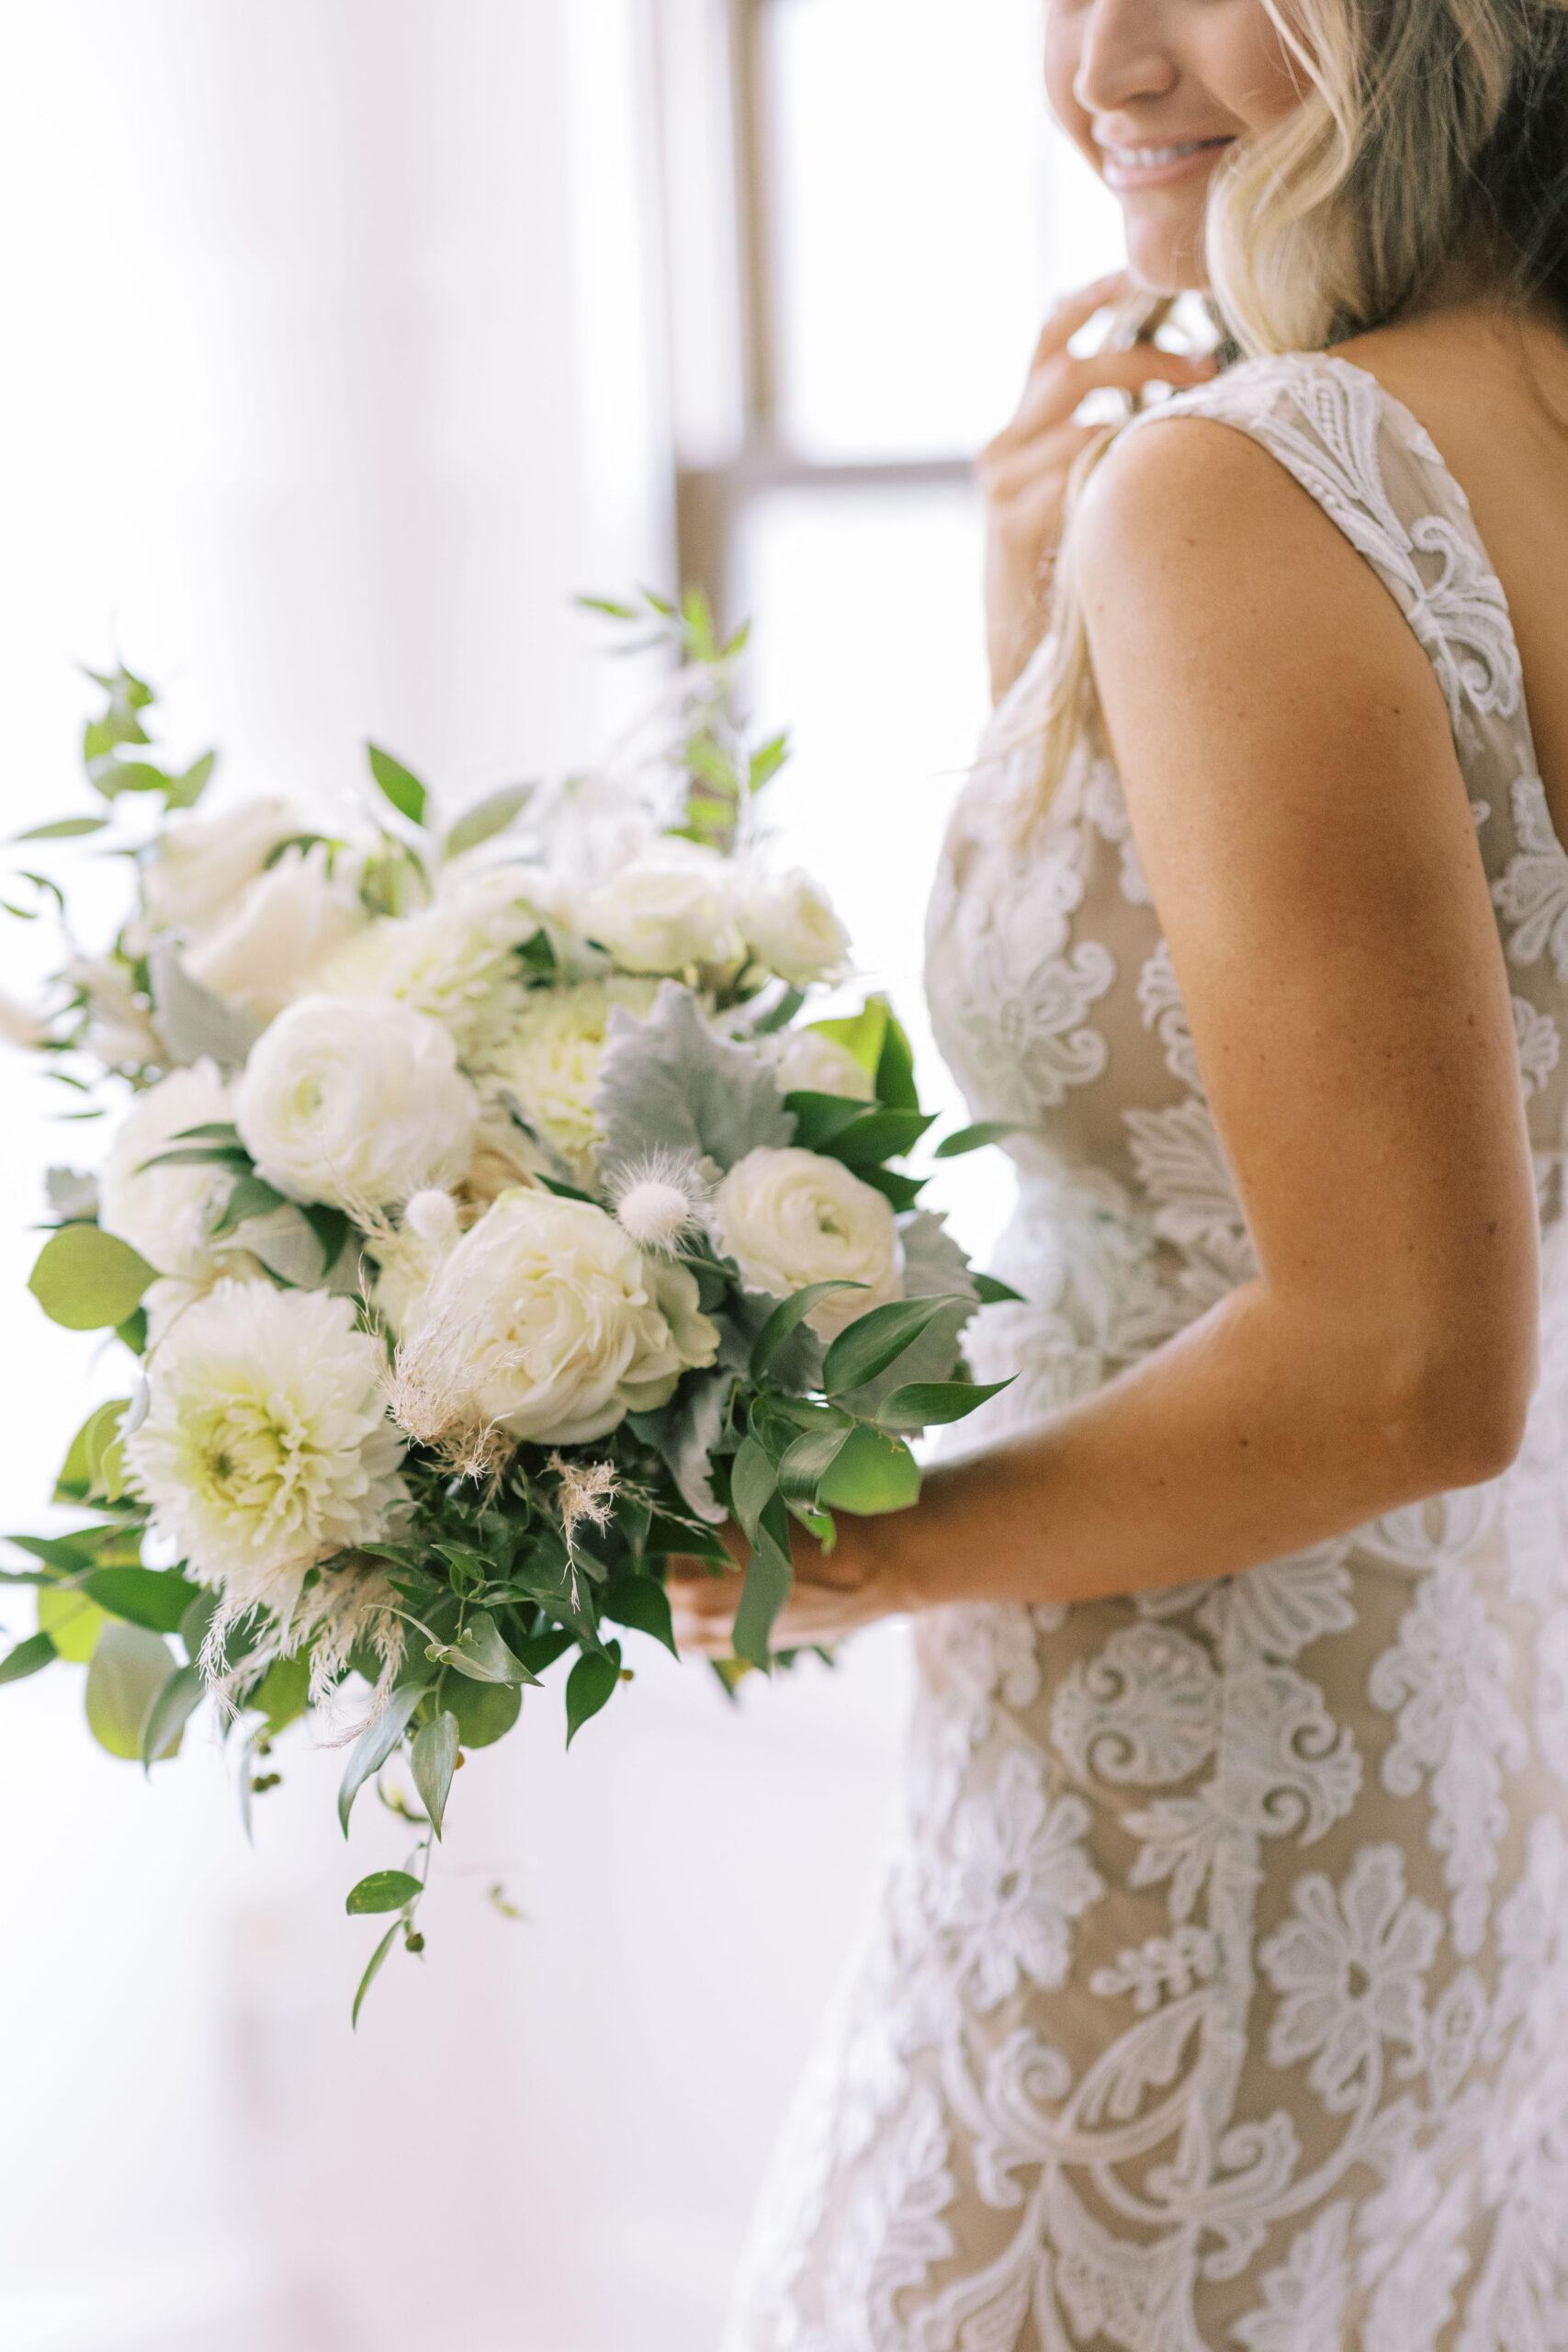 monochromatic wedding bouquet, white wedding flowers, white and green bouquet, Hotel du Village Wedding